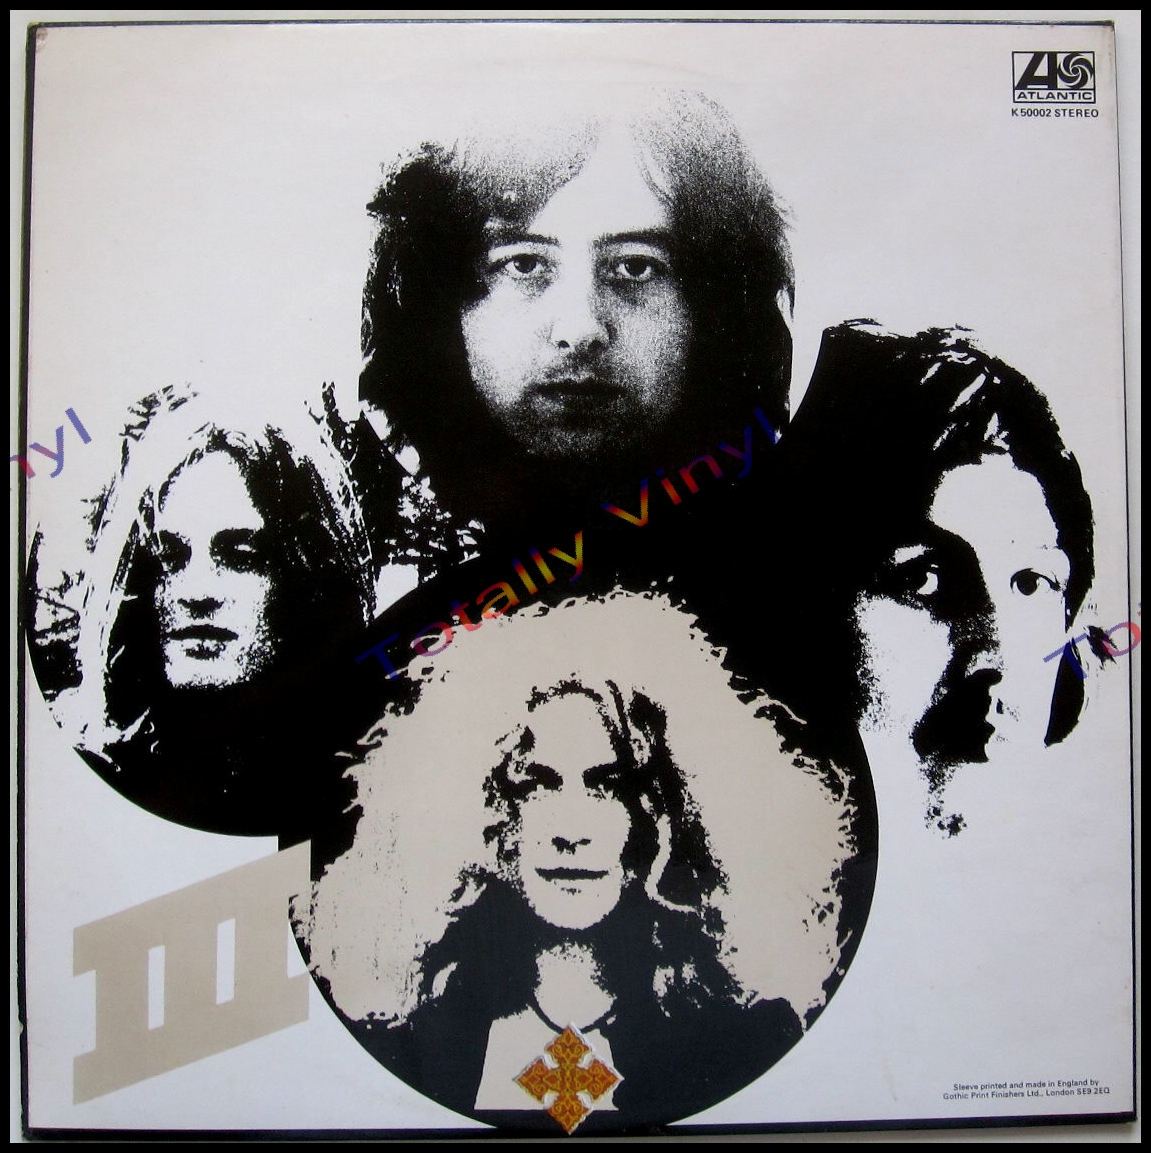 Led Zeppelin III - 1970. Led Zeppelin led Zeppelin III обложка. Led Zeppelin 3 винил. Led Zeppelin Tangerine. Led zeppelin iii led zeppelin